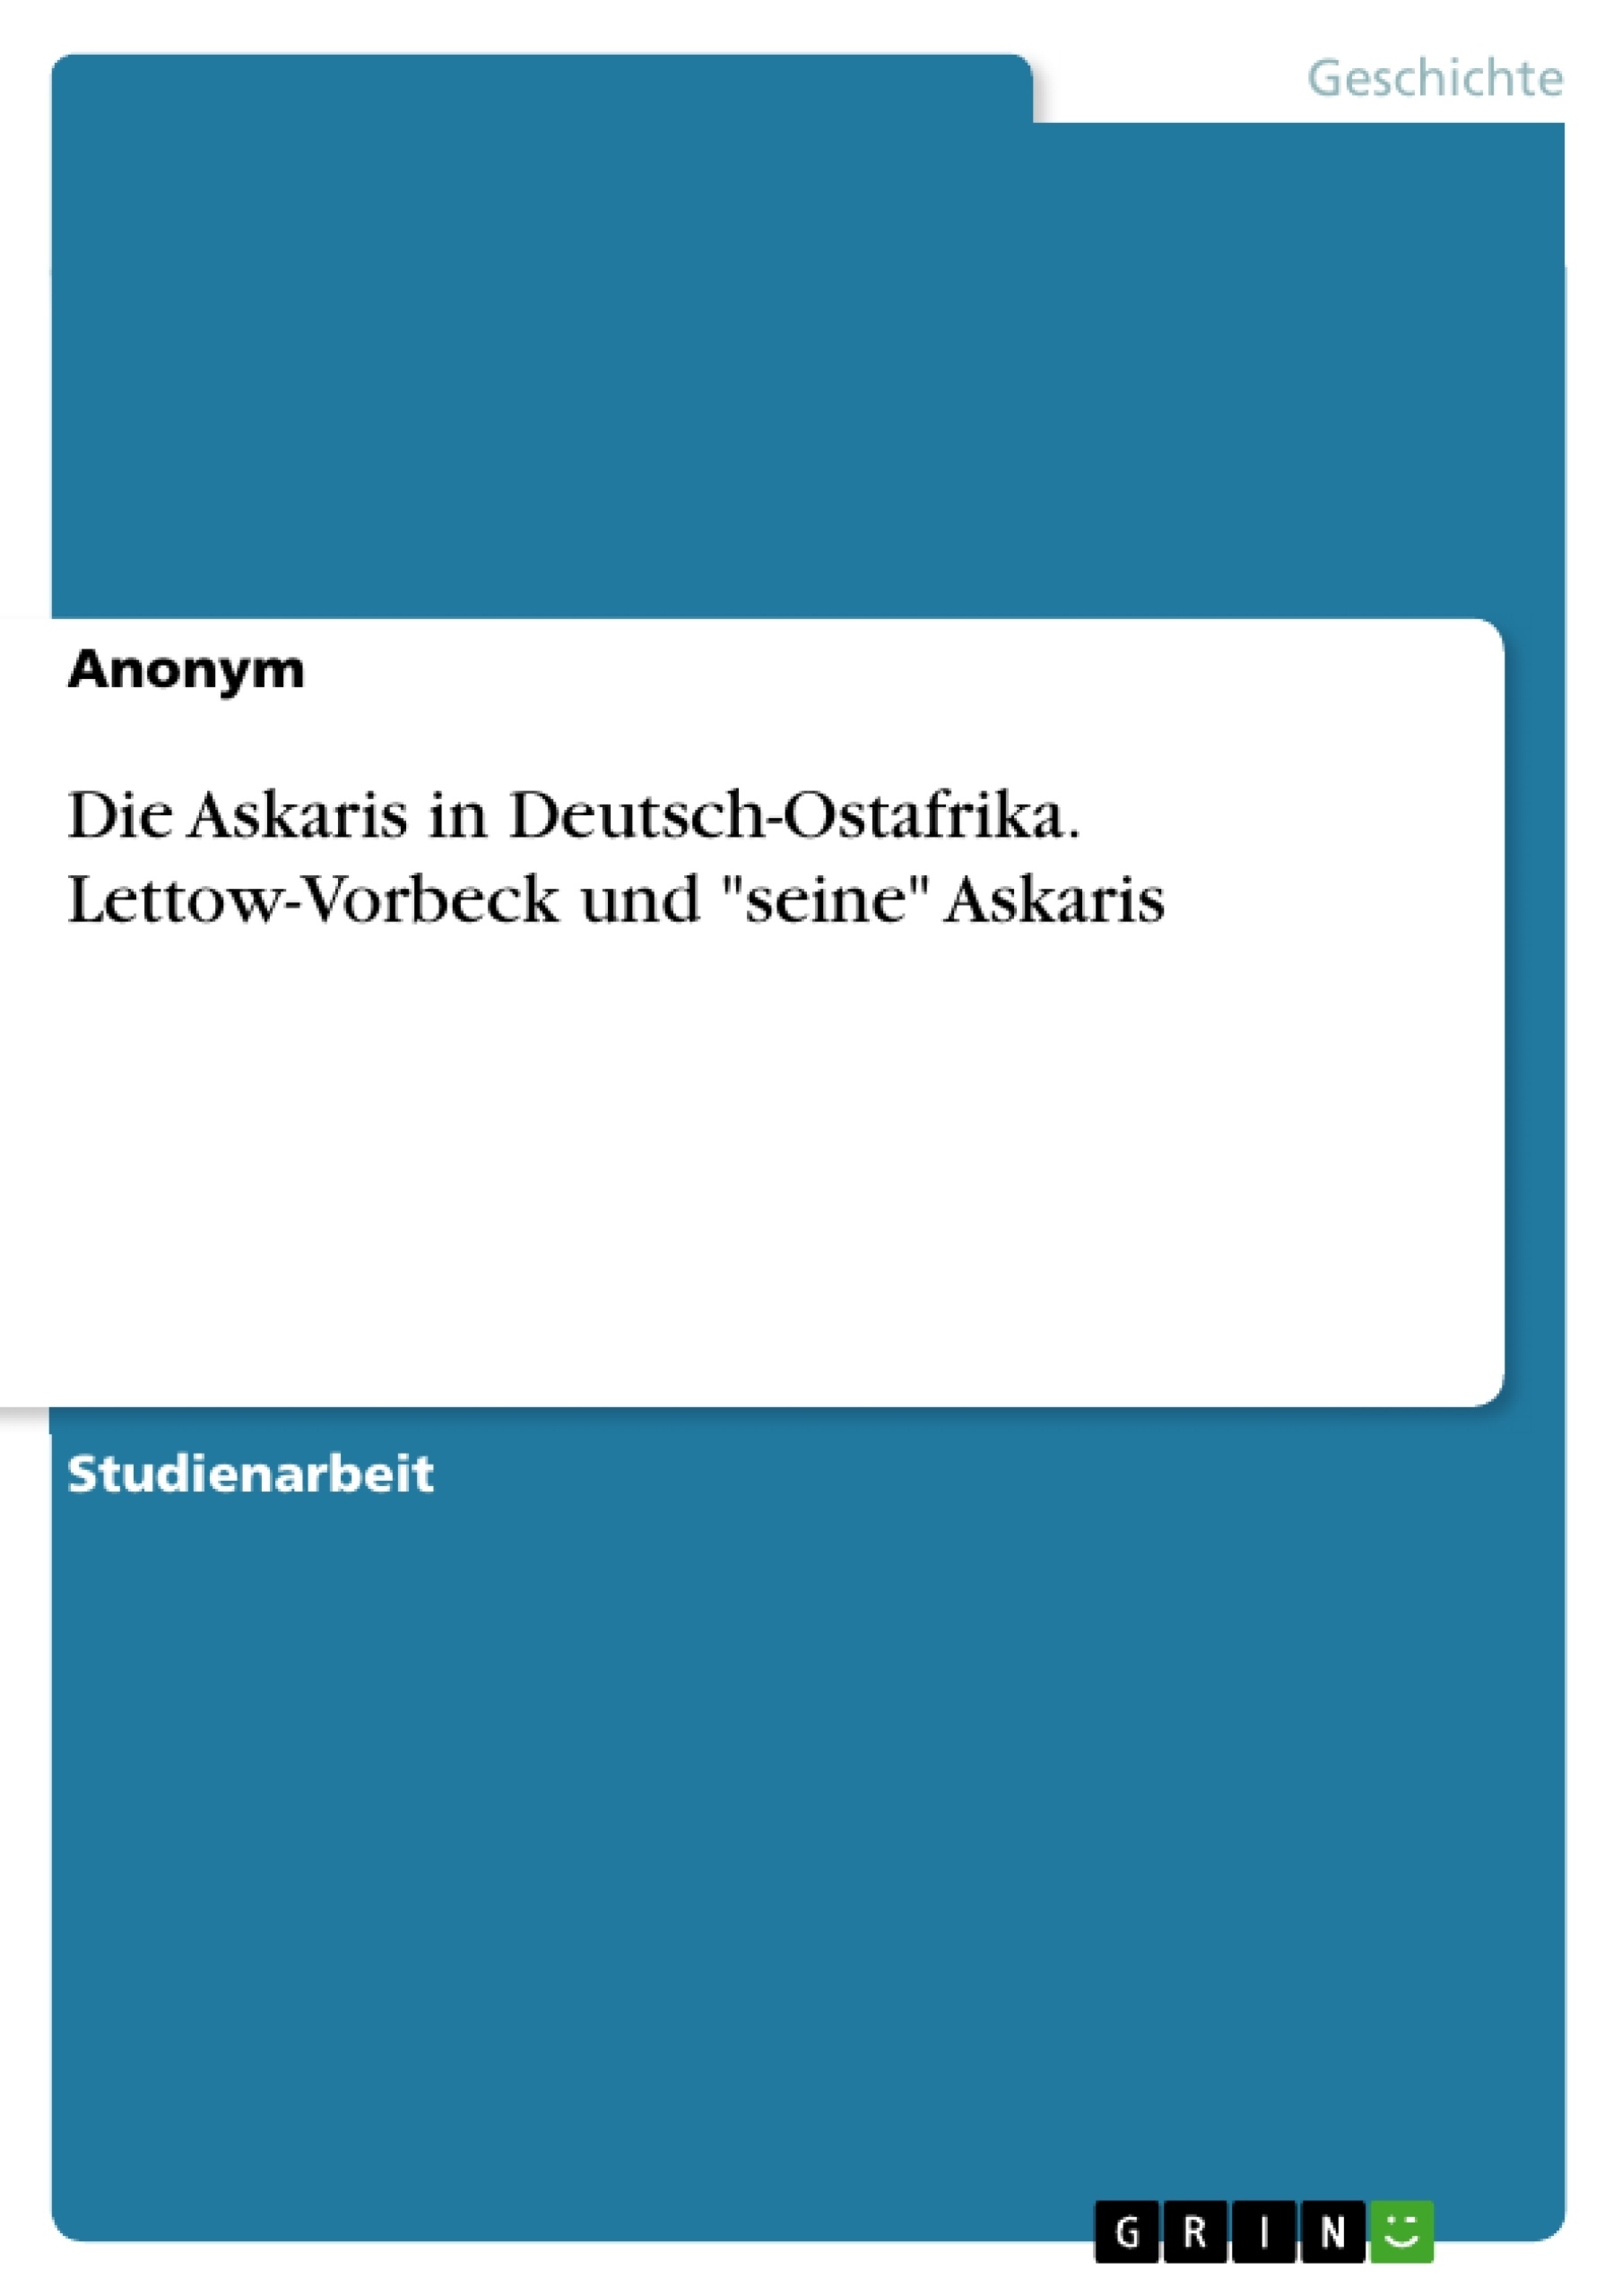 Título: Die Askaris in Deutsch-Ostafrika. Lettow-Vorbeck und "seine" Askaris